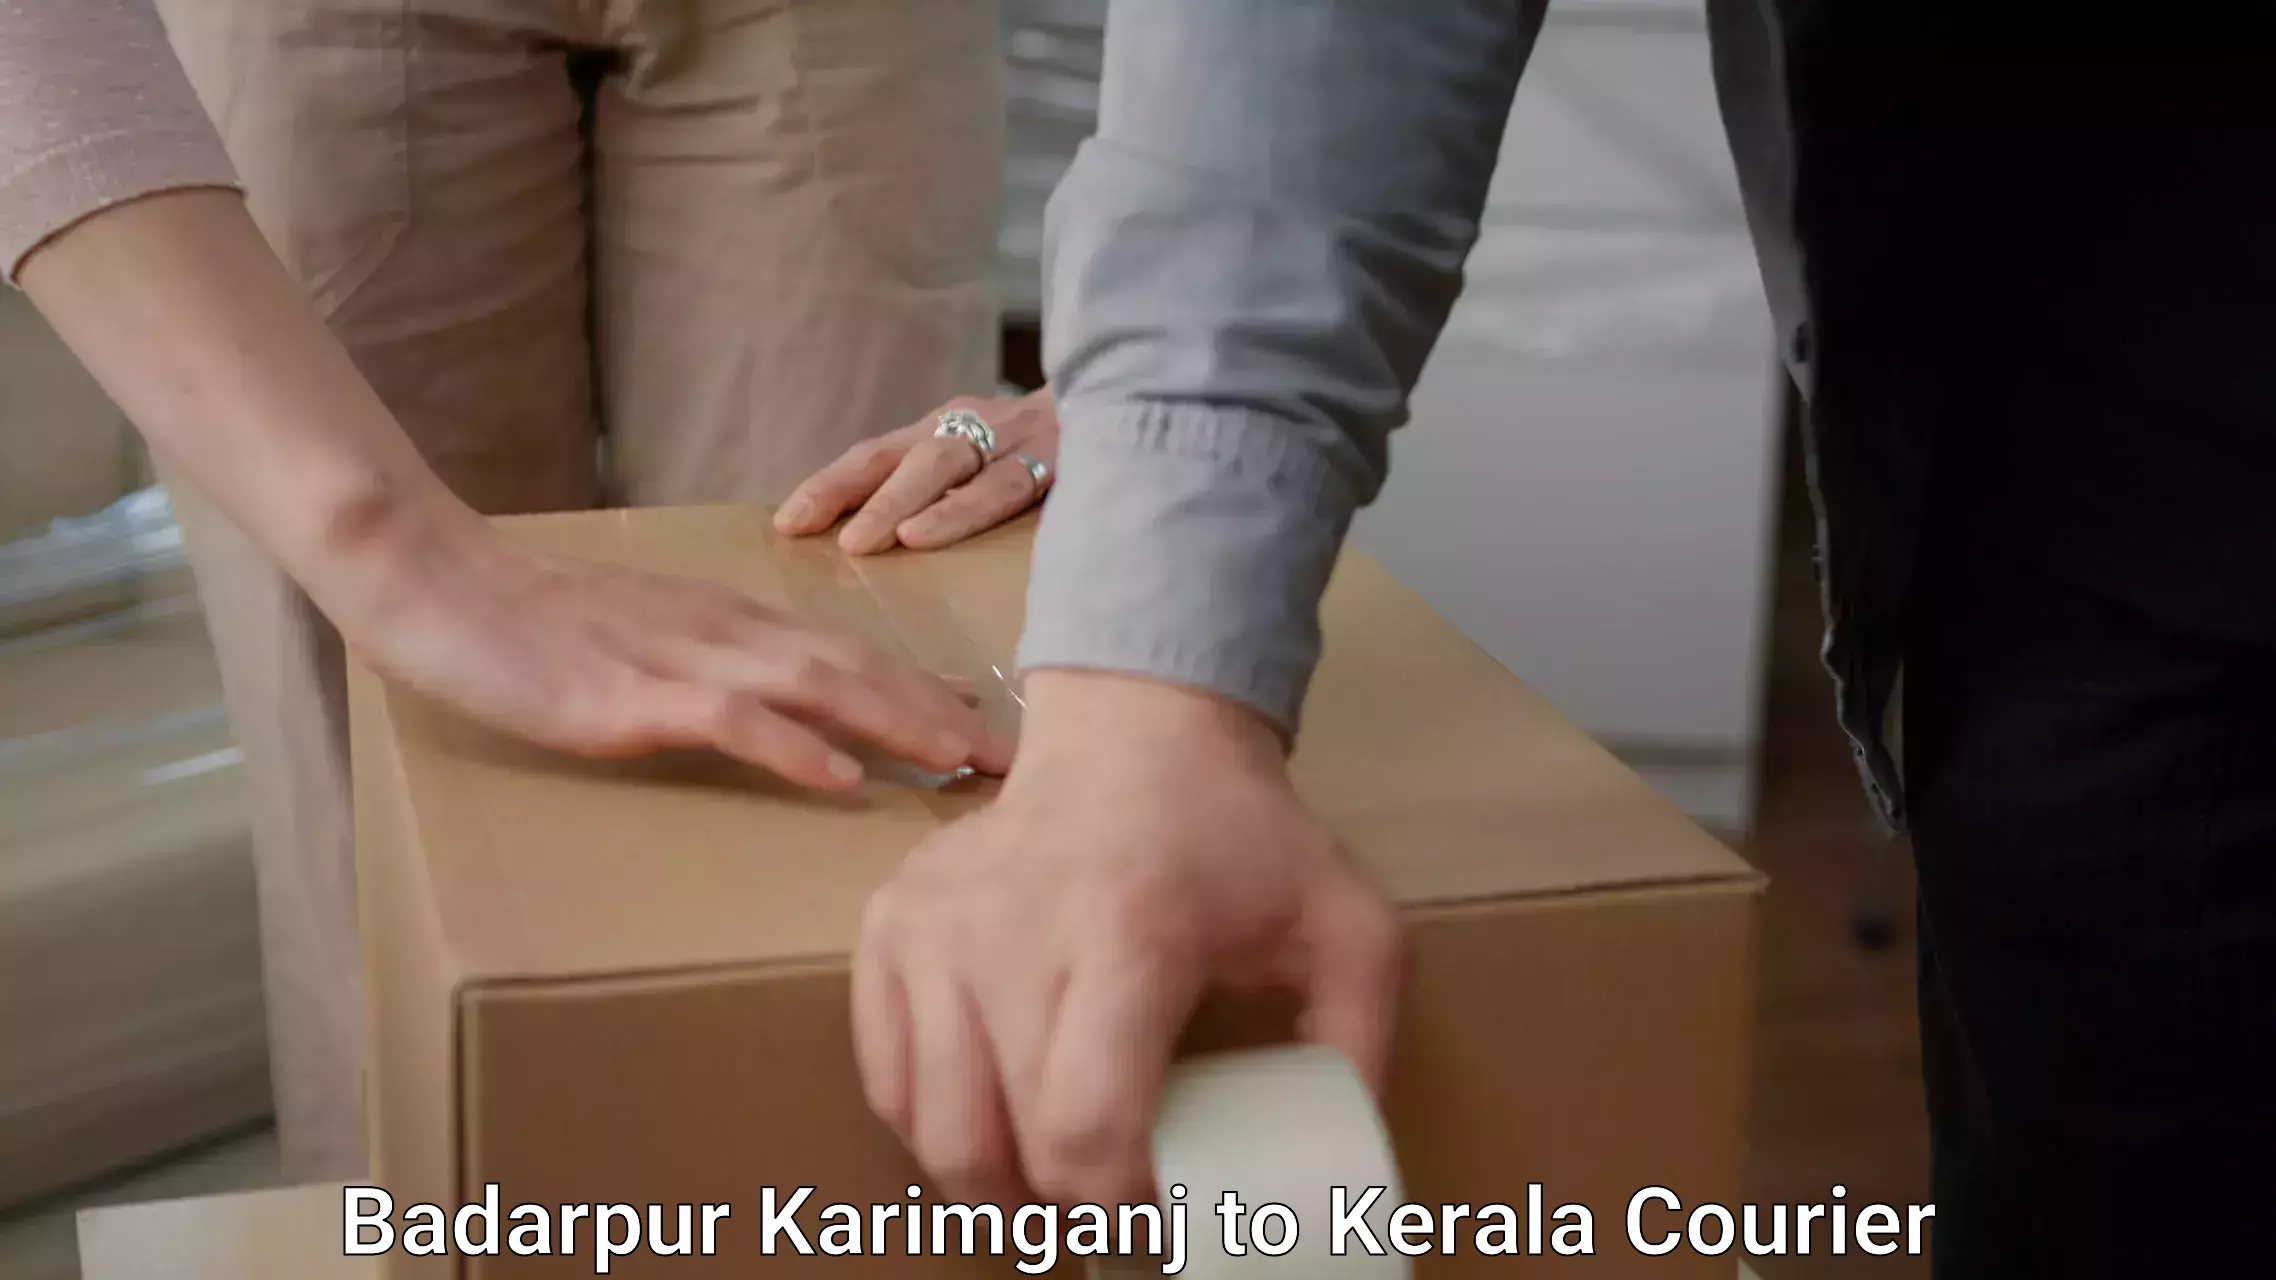 Furniture moving experts Badarpur Karimganj to Piravom